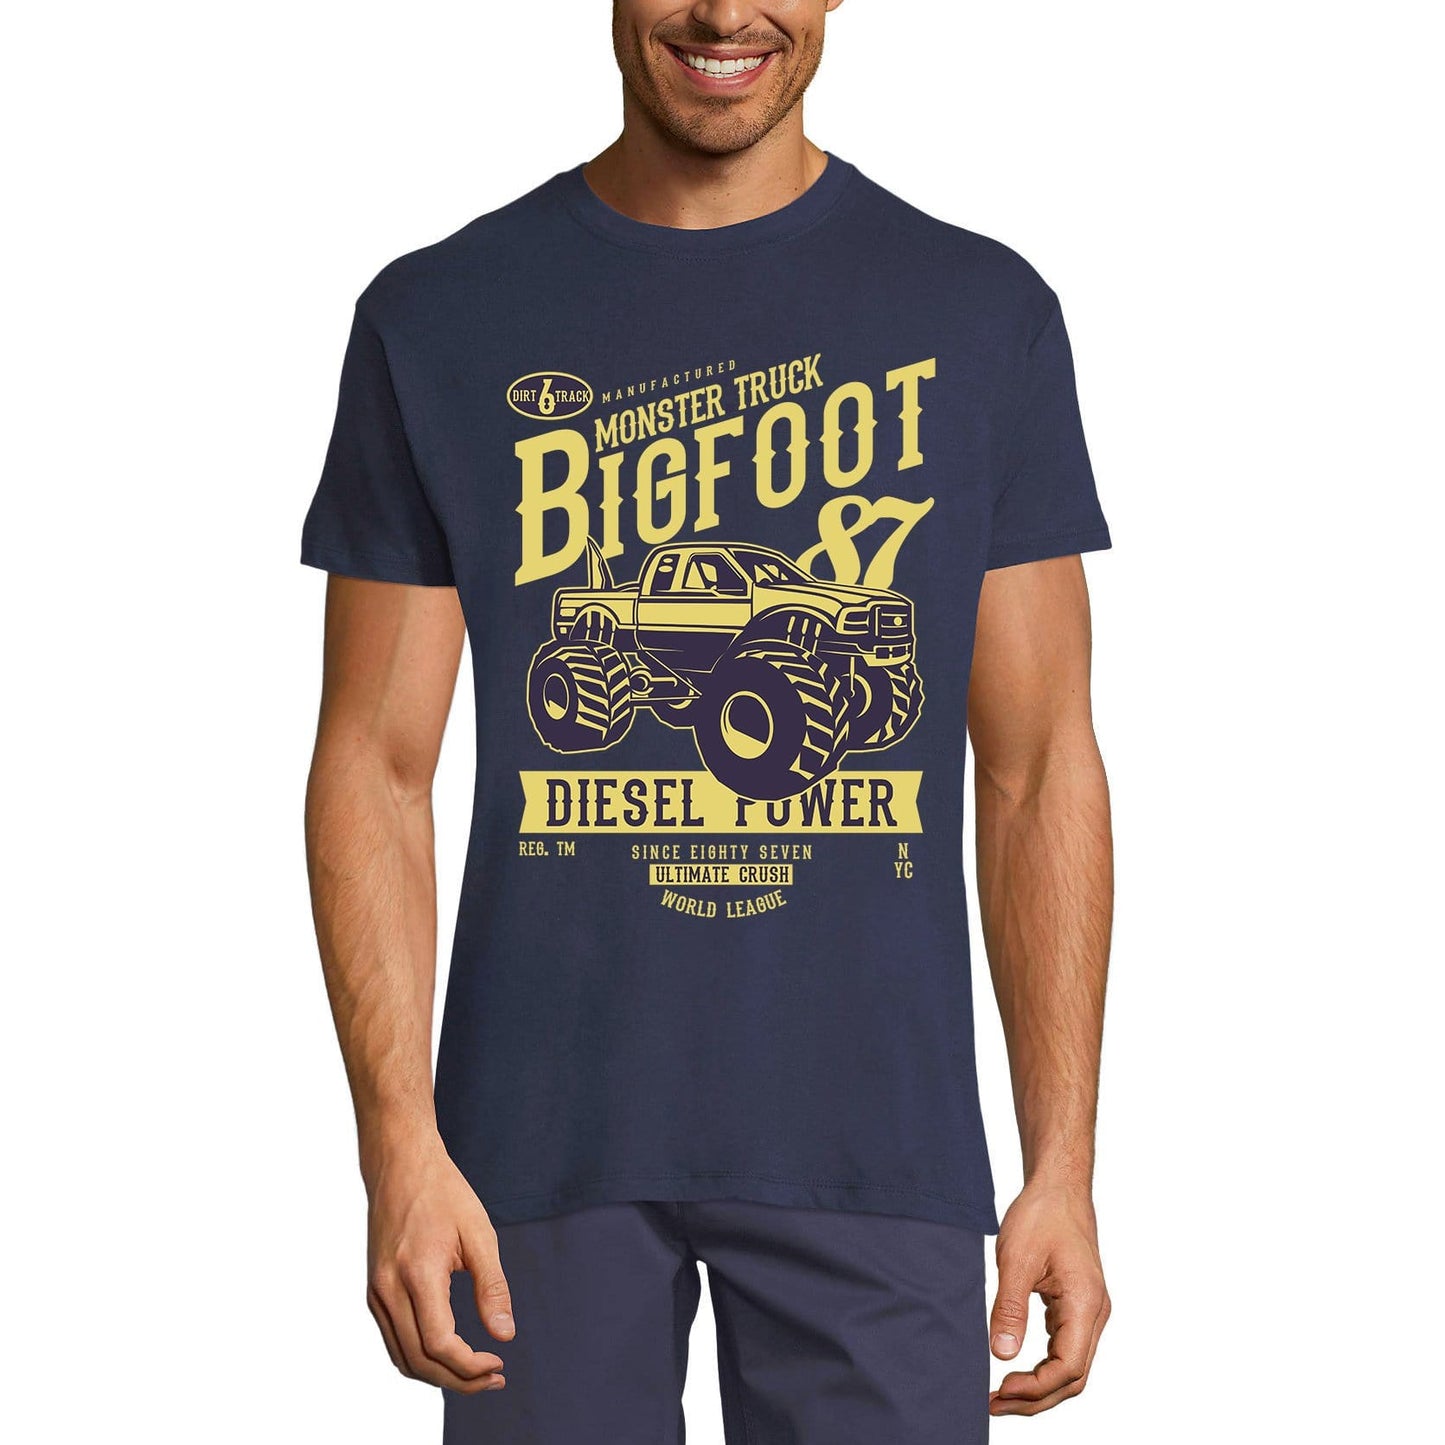 ULTRABASIC Men's T-Shirt Monstertruck Bigfoot - Crush World League Since 87 Shirt